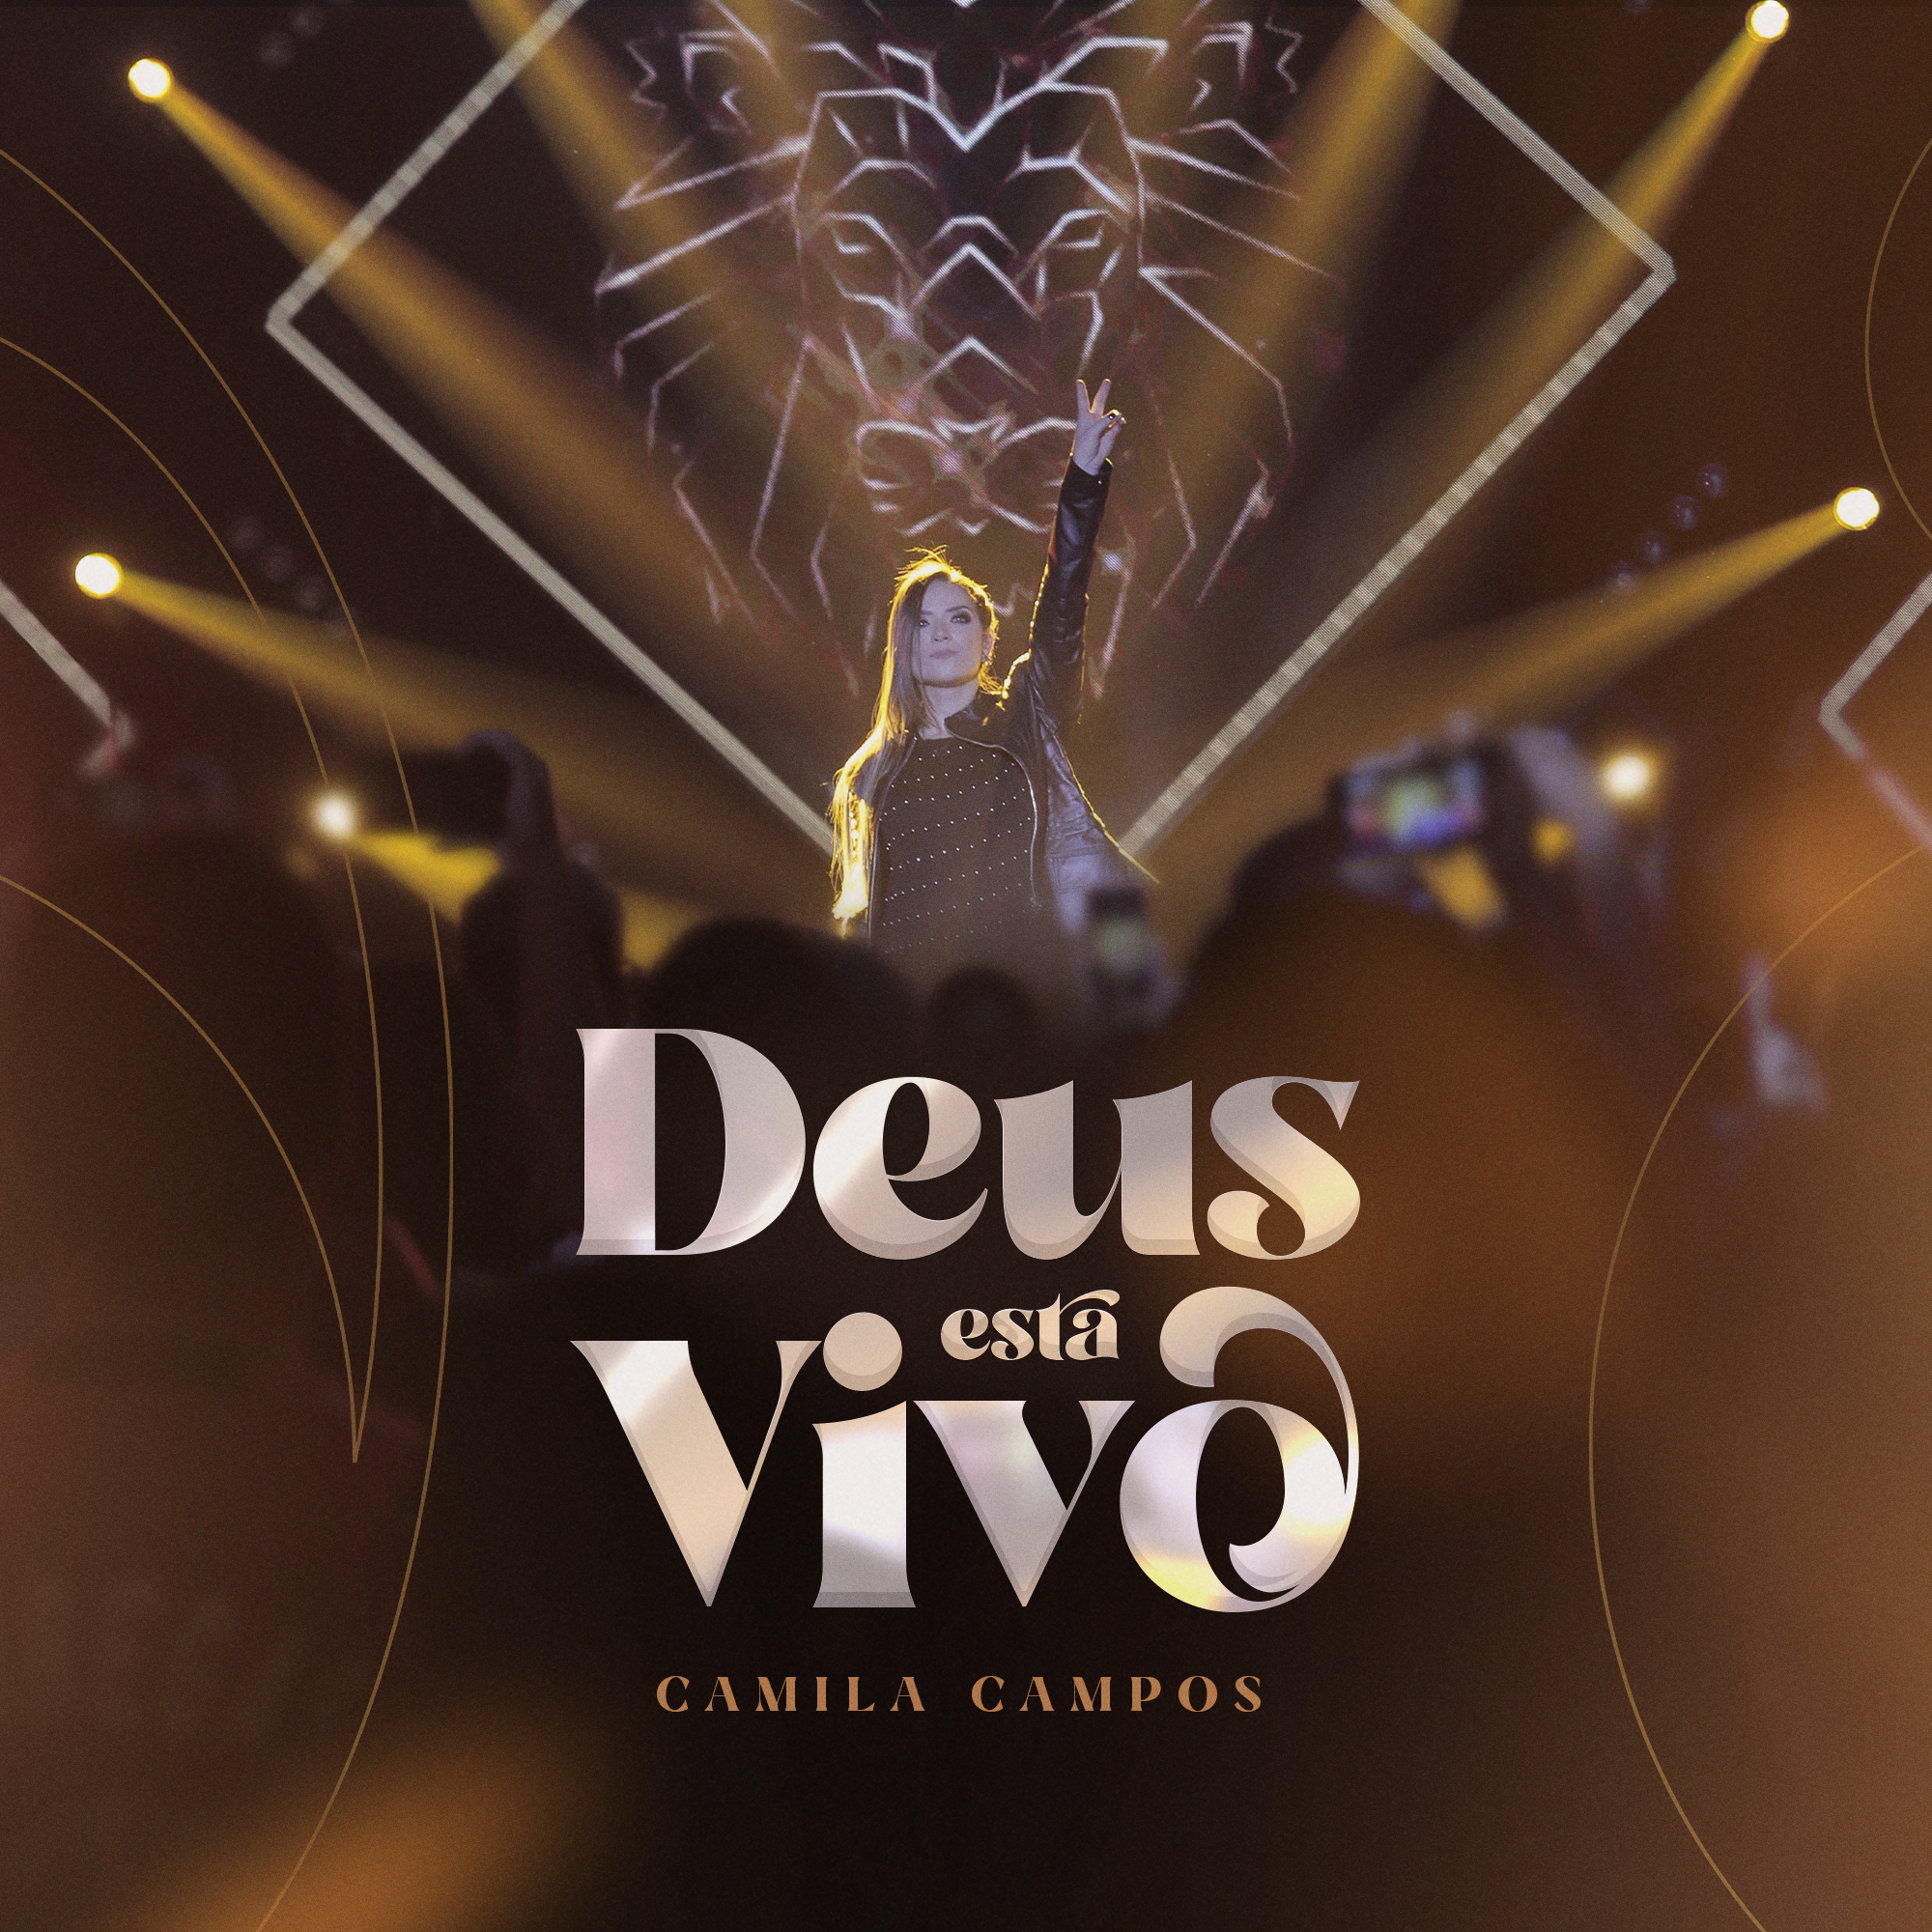 Camila Campos e o seu pop rock declarando “Deus está vivo”